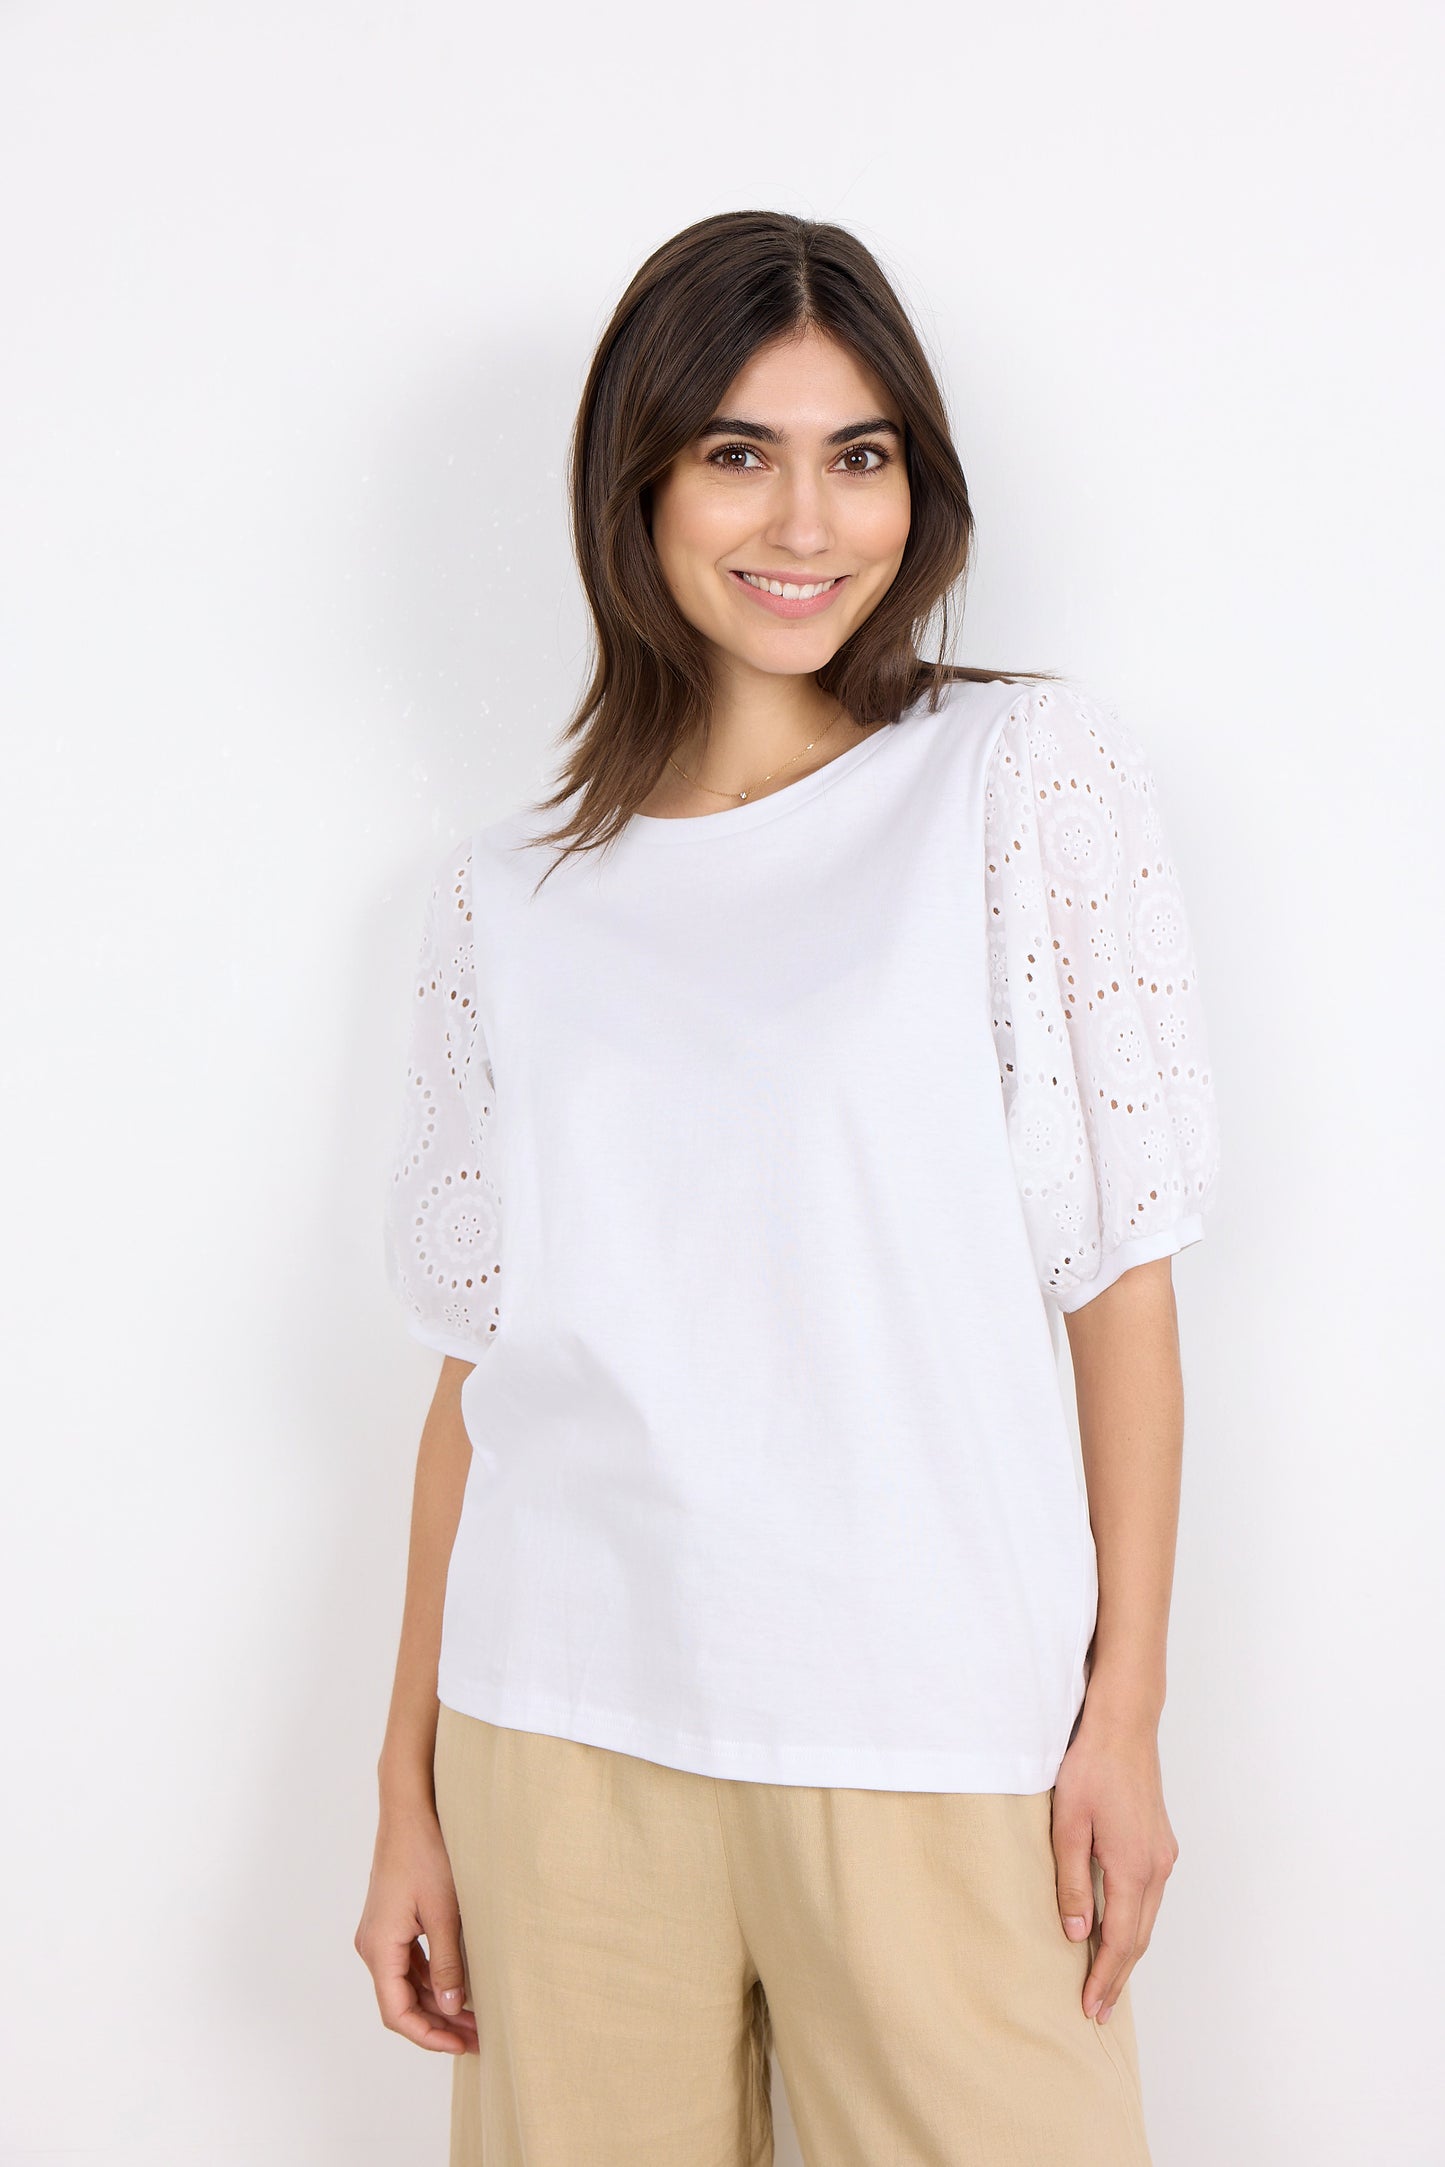 Soya Concept Loraine 3 blouse